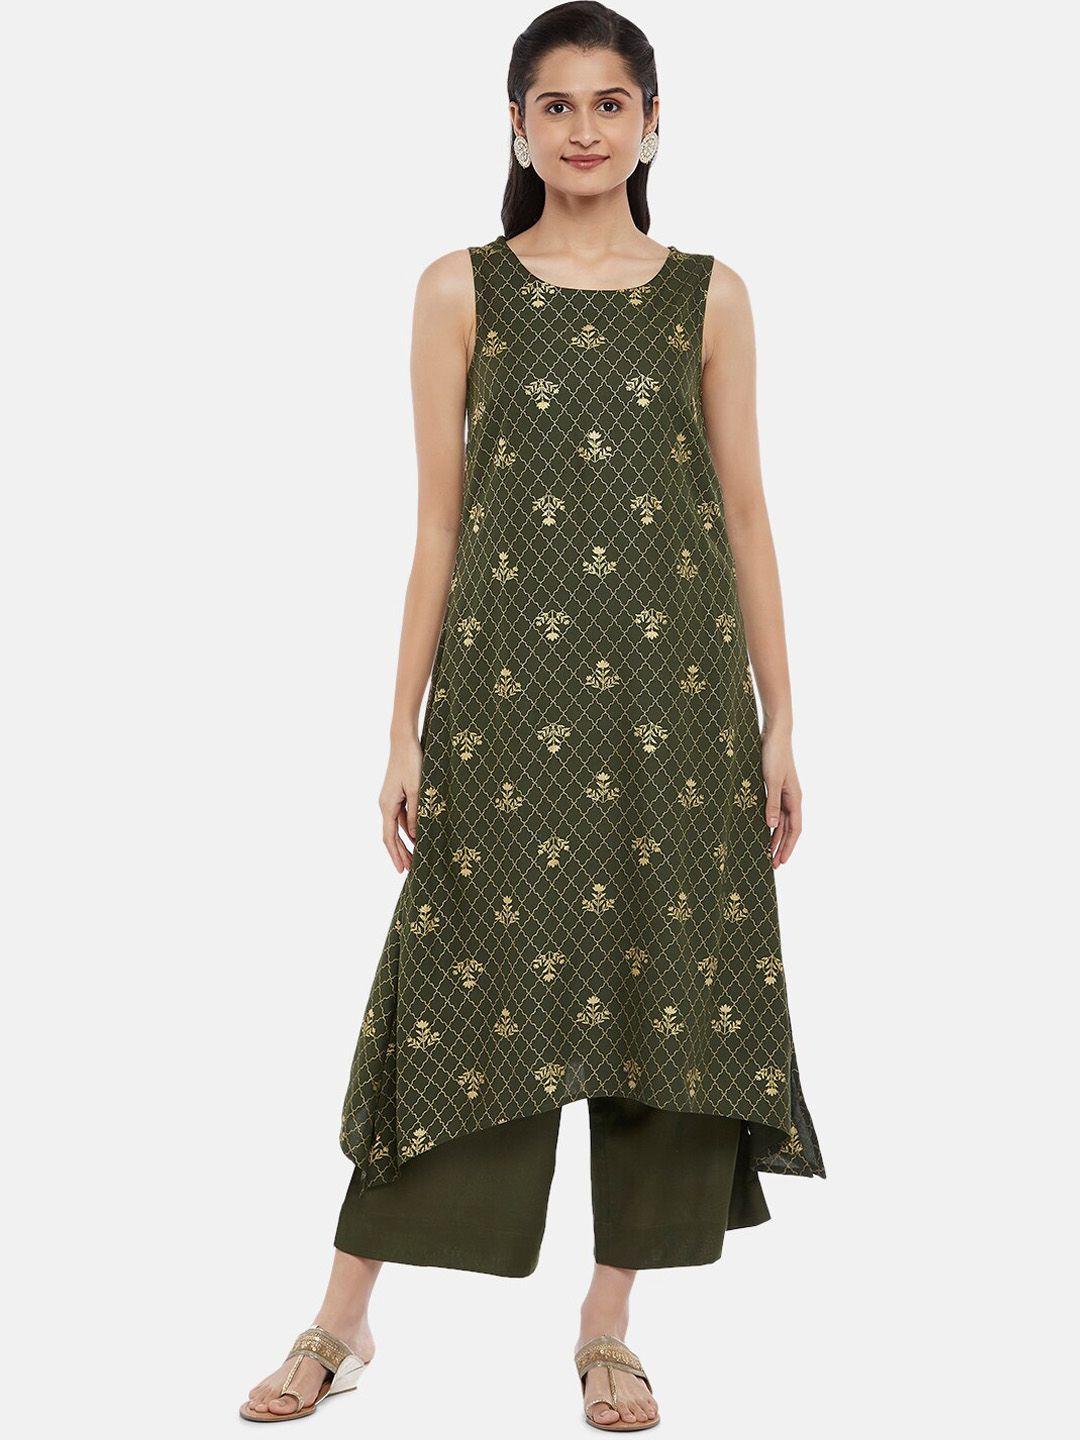 rangmanch by pantaloons women olive green printed kurta with palazzos